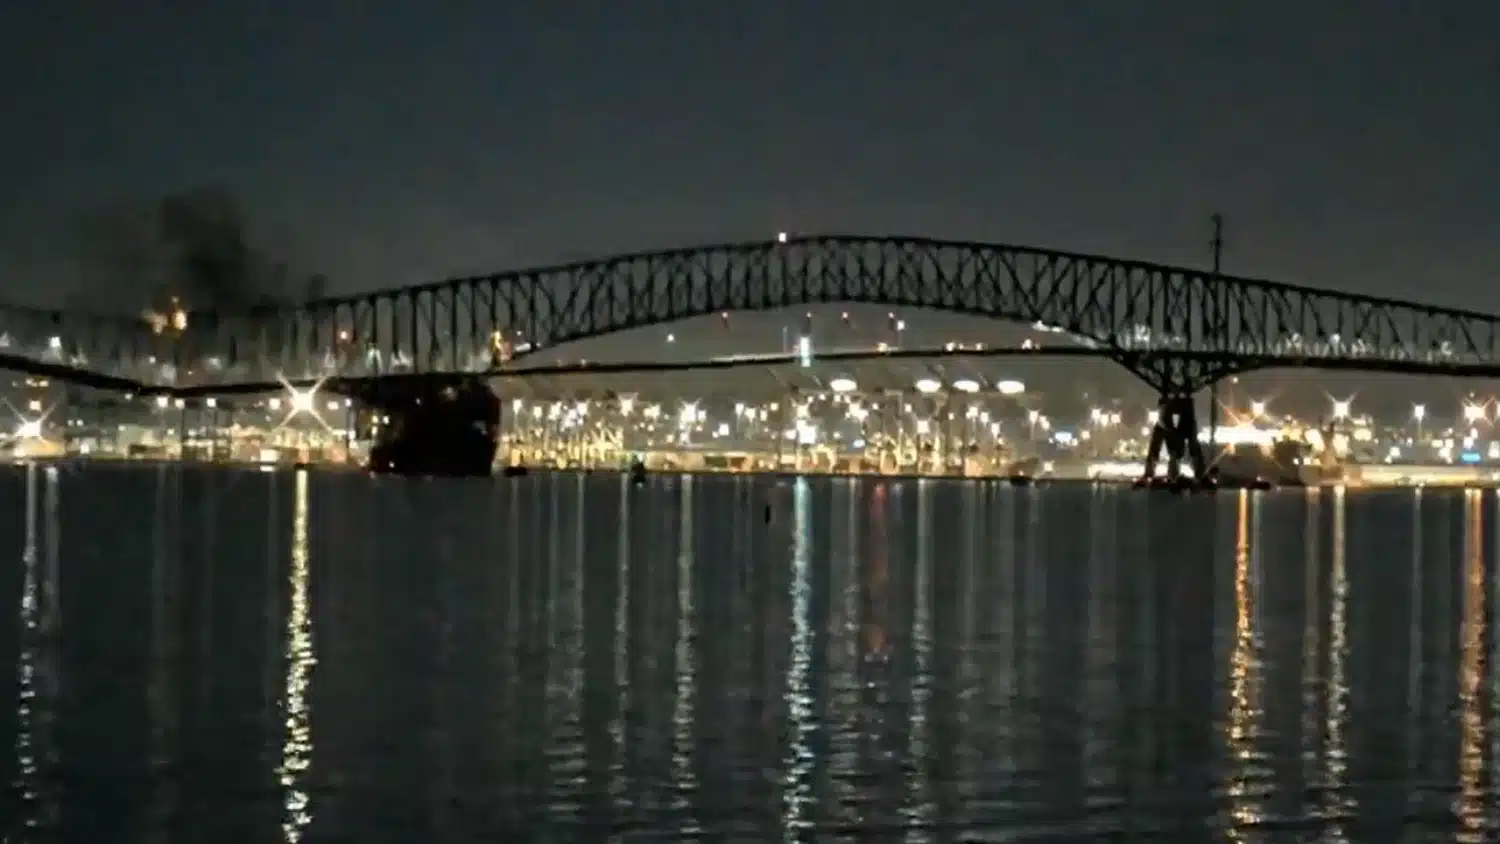 La nave urta il ponte e lo fa cadere: tragedia a Baltimora [VIDEO]